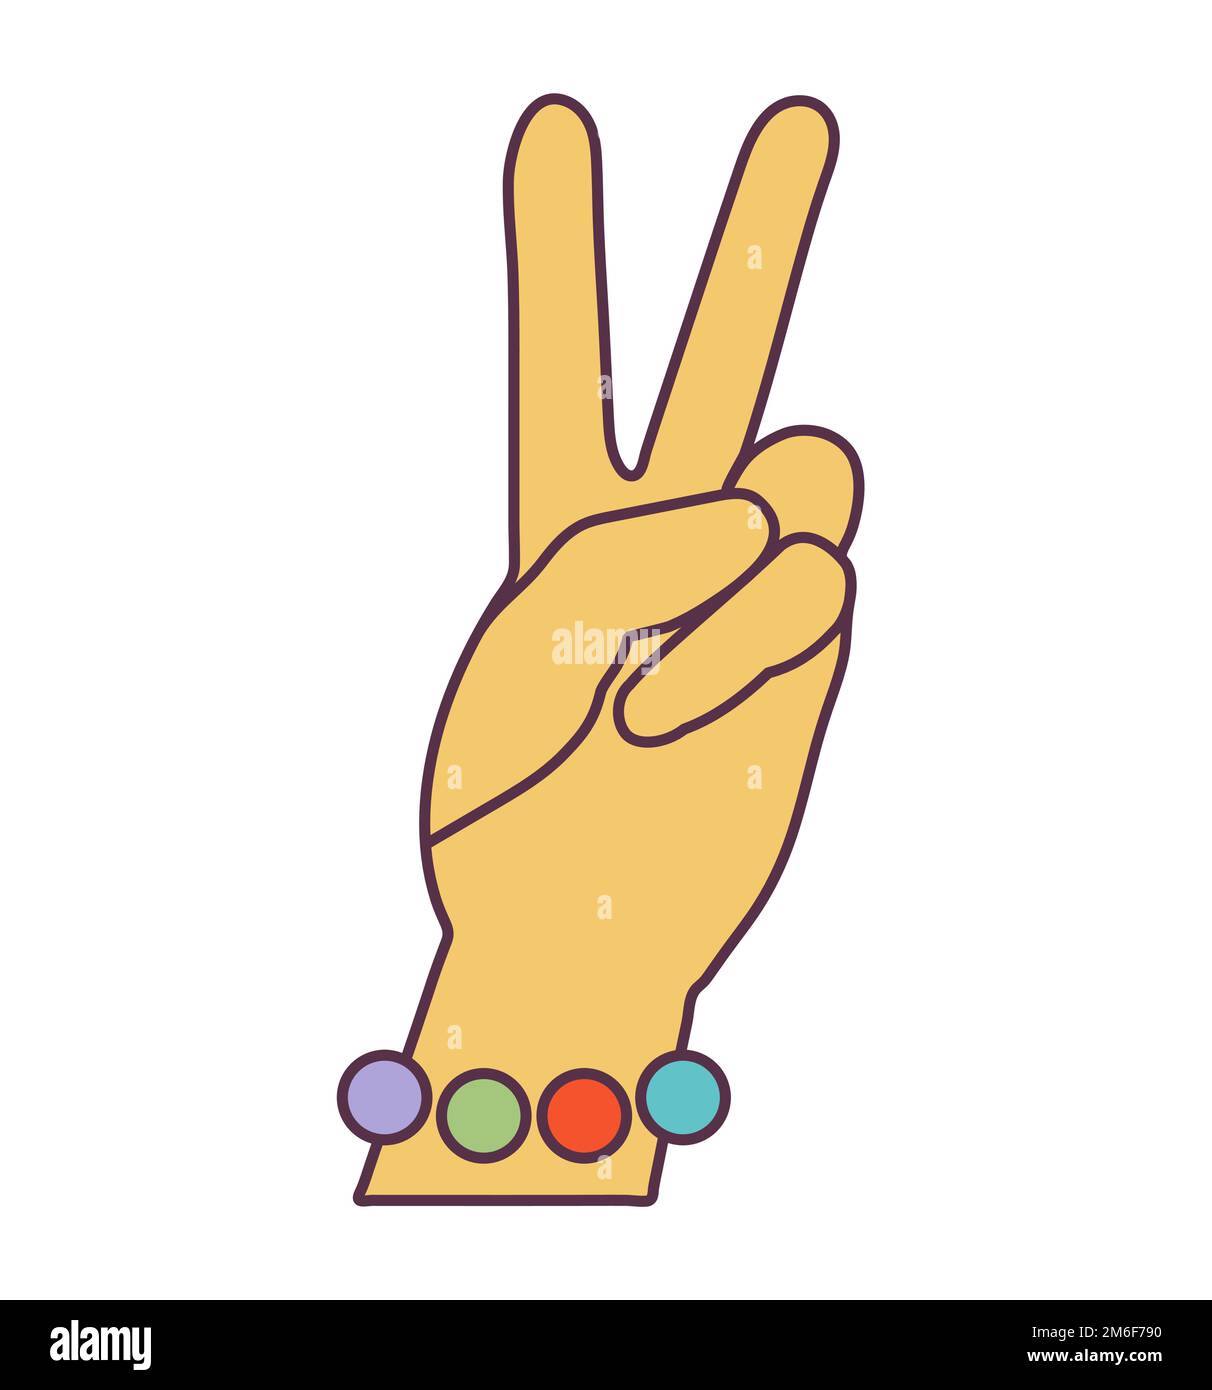 Retro 70s Groovy Hippie adesivo mano simbolo di pace. Elemento cartoon psichedelico - illustrazione funky in stile hippy vintage. Illustrazione piatta vettoriale Illustrazione Vettoriale